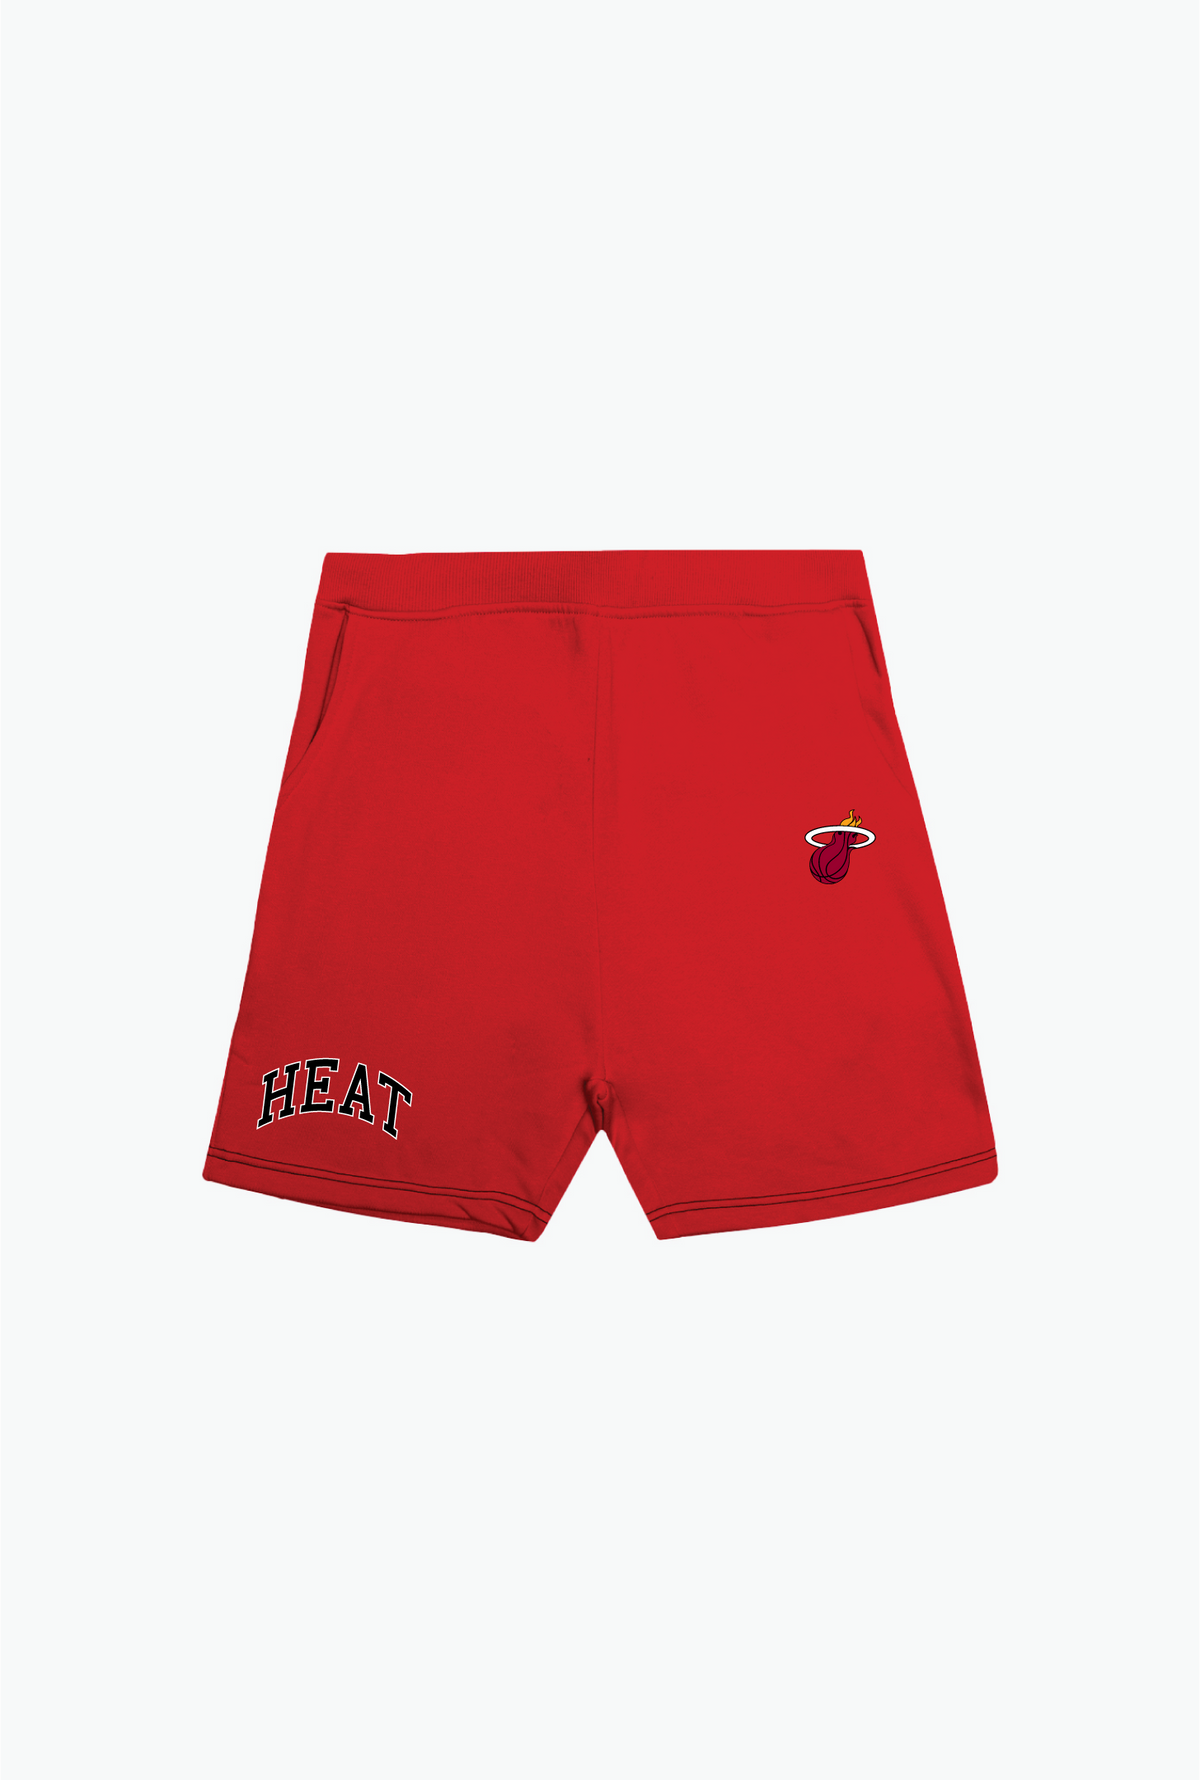 Miami Heat Playoffs Fleece Shorts - Red